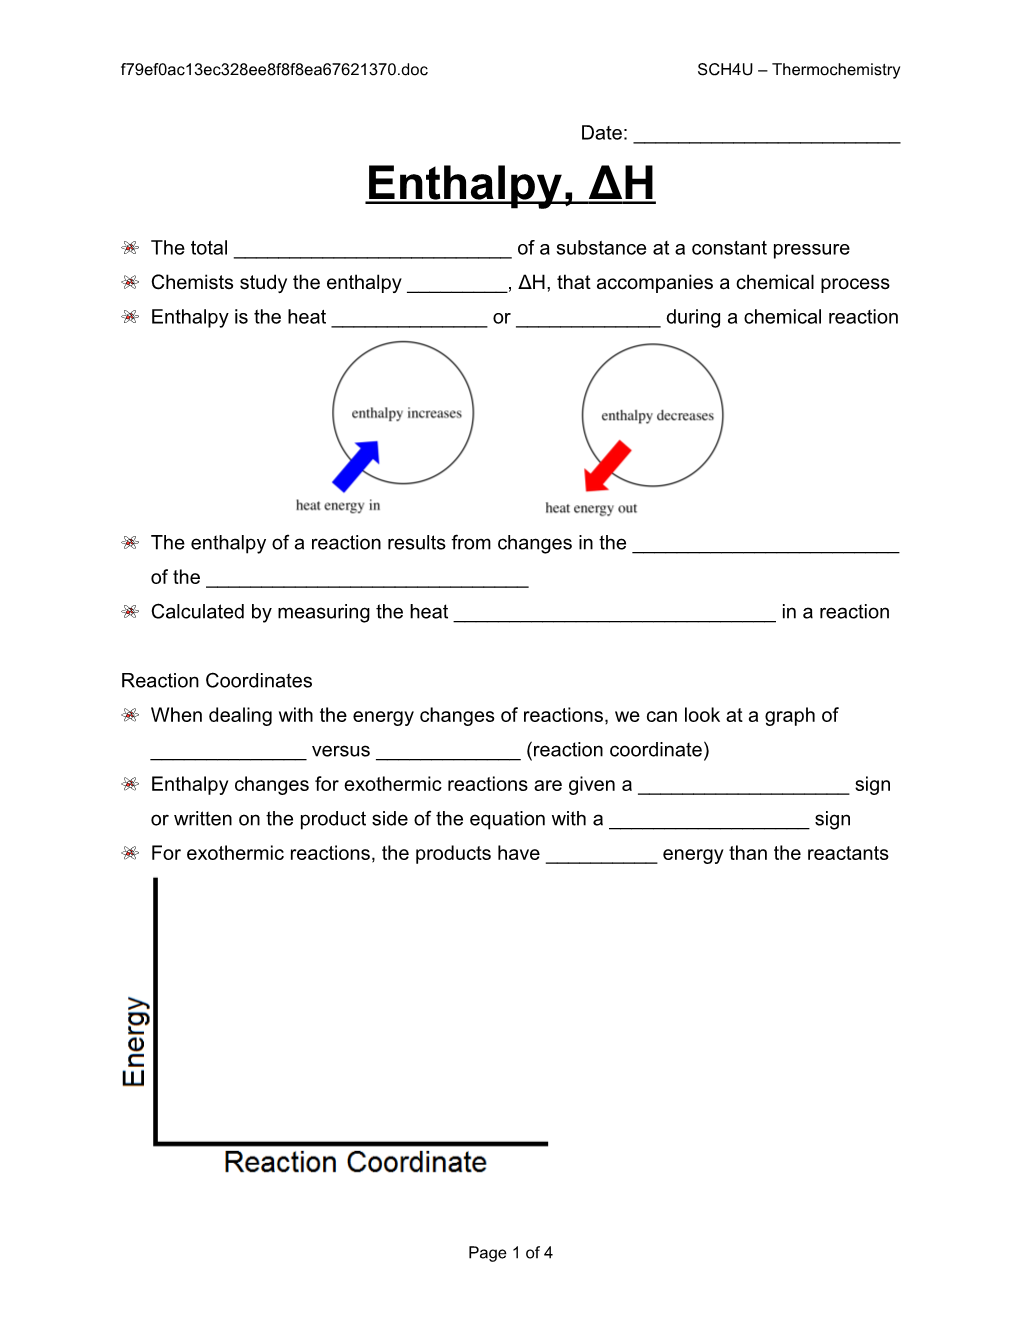 5 - Enthalpy SCH4U Thermochemistry